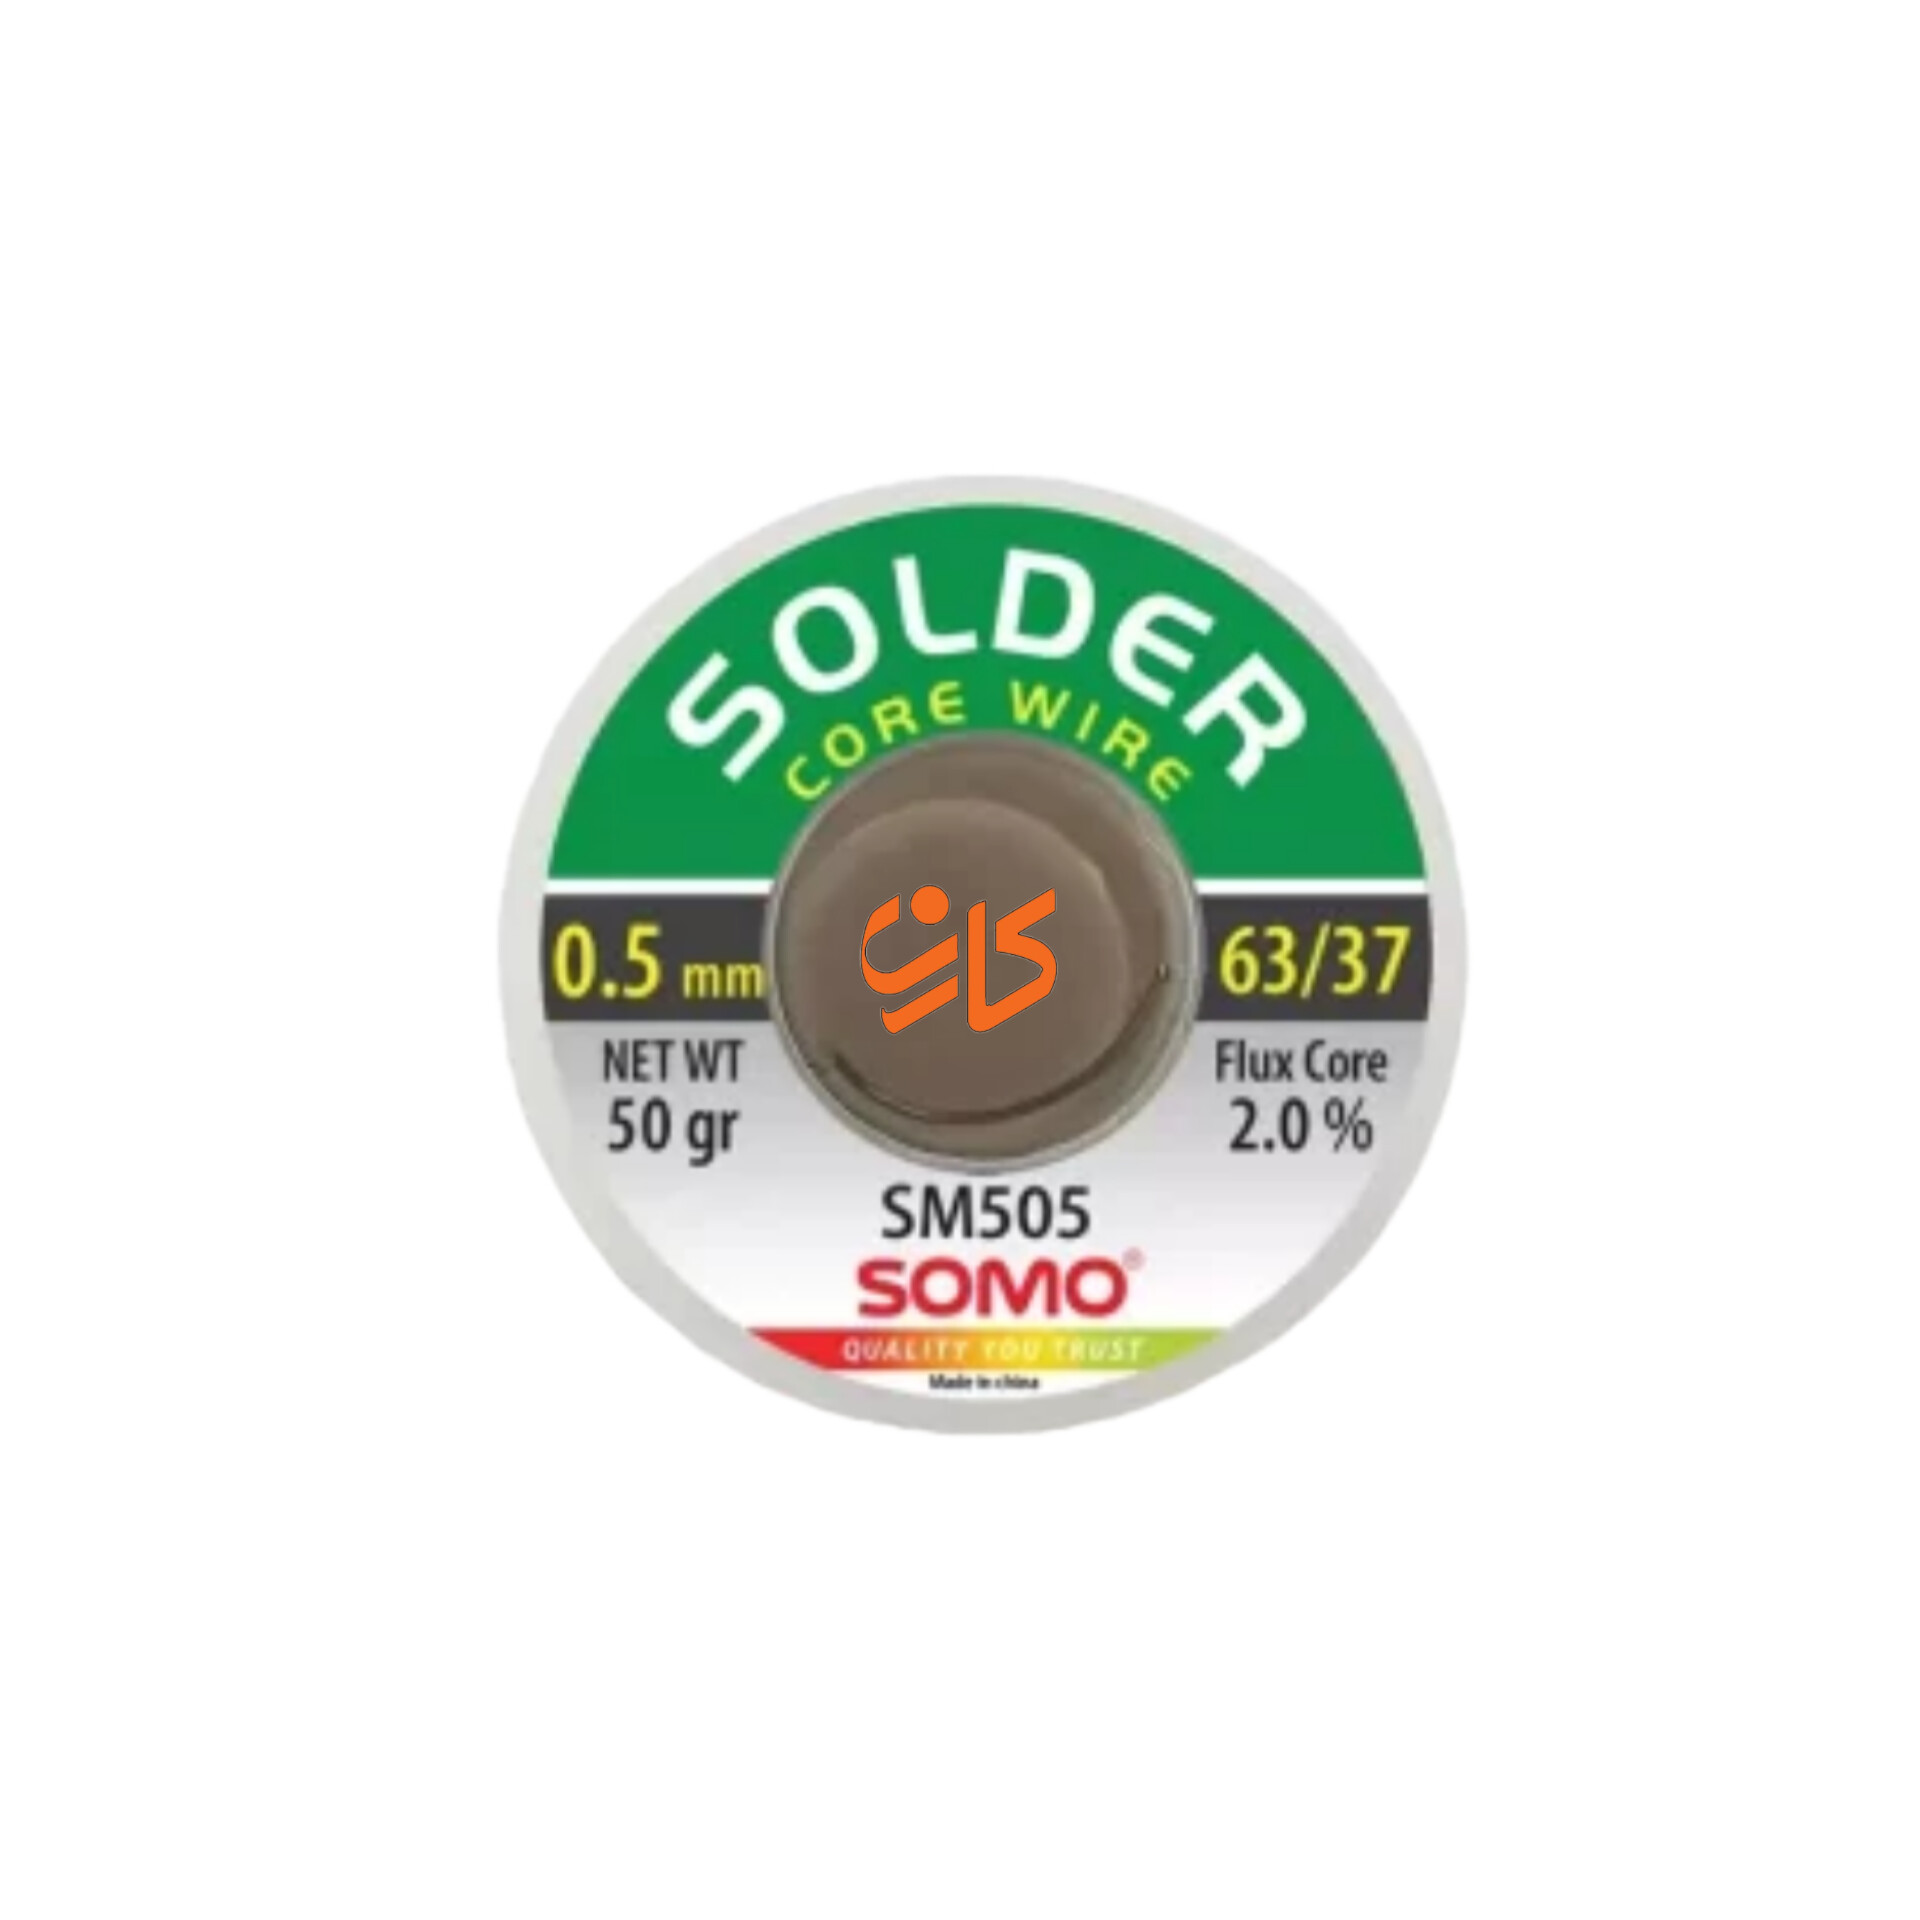 سیم لحیم سومو 0.5 میلیمتر 50 گرم مدل SOMO SM505